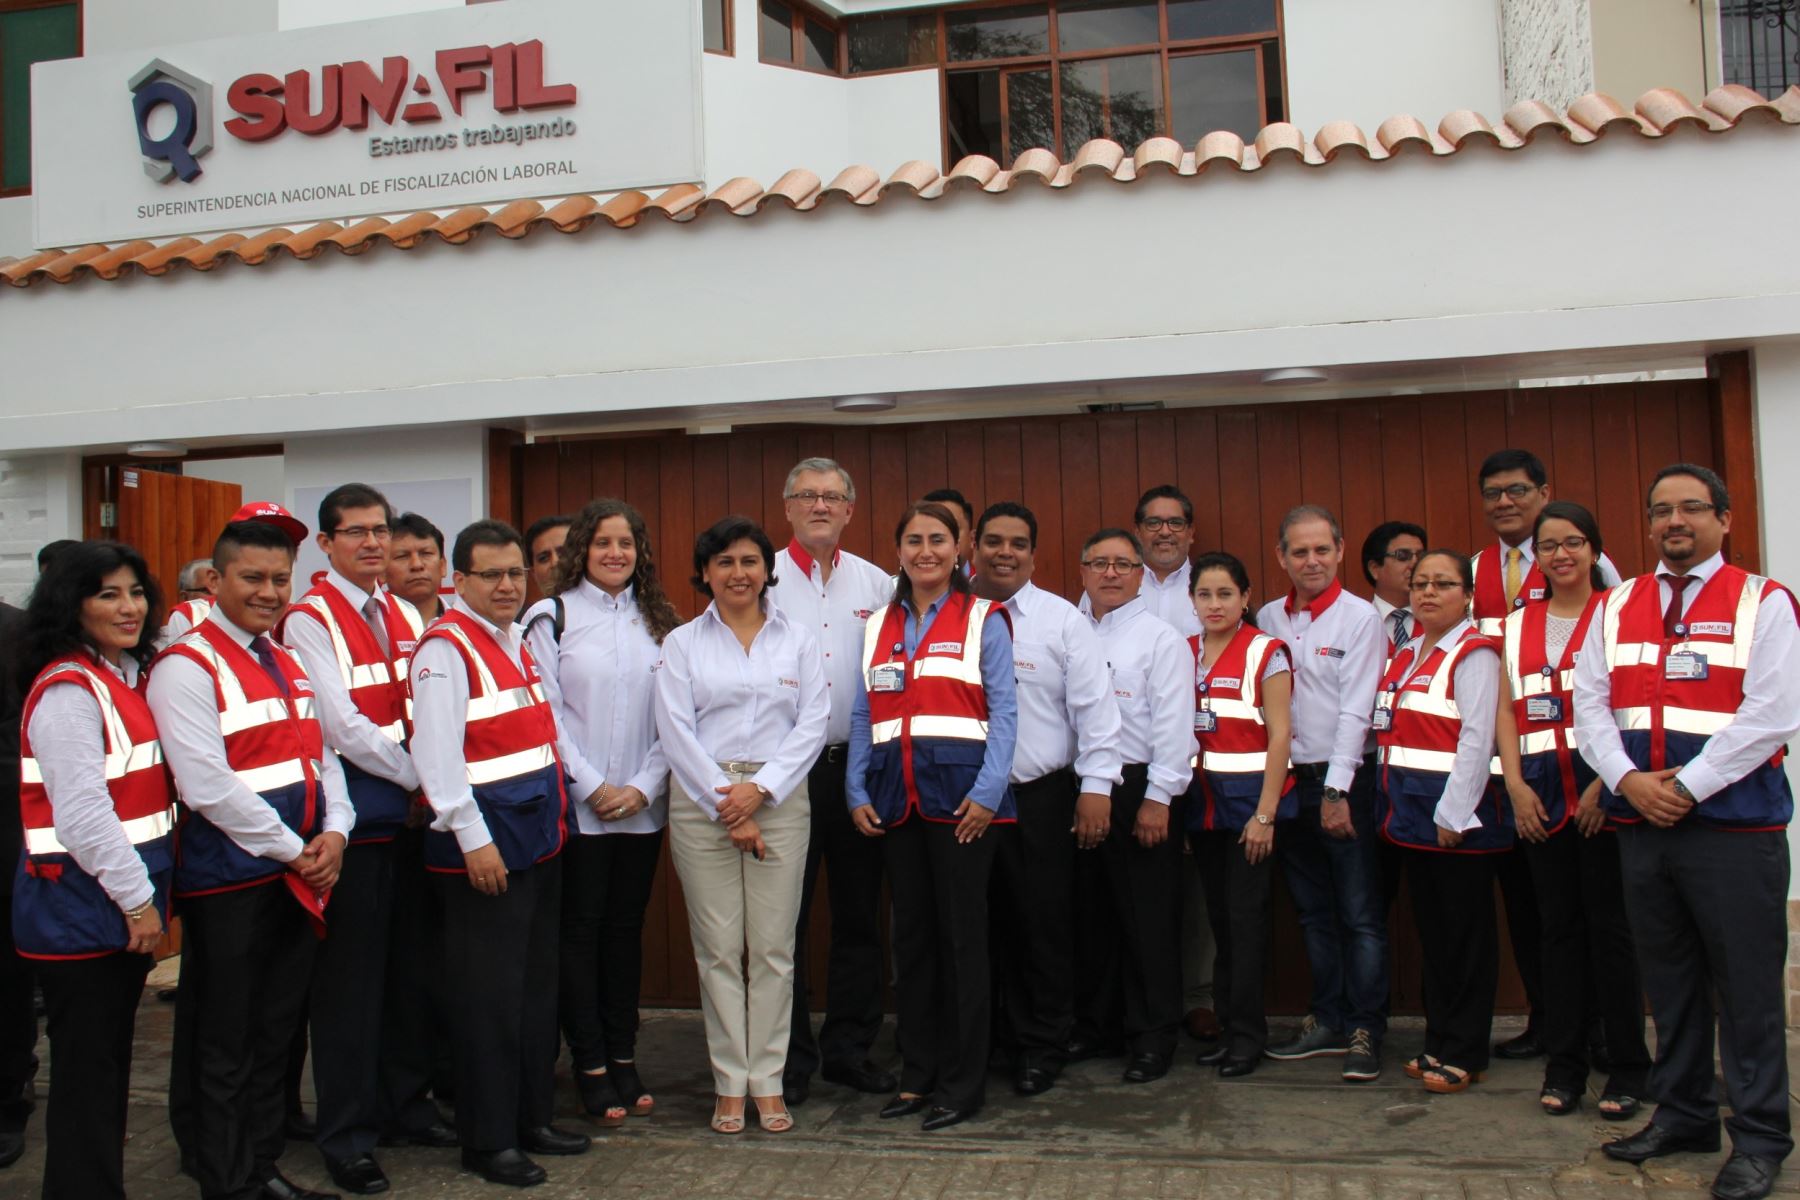 Sunafil promoverá formalización laboral en Piura en el marco de la reconstrucción.